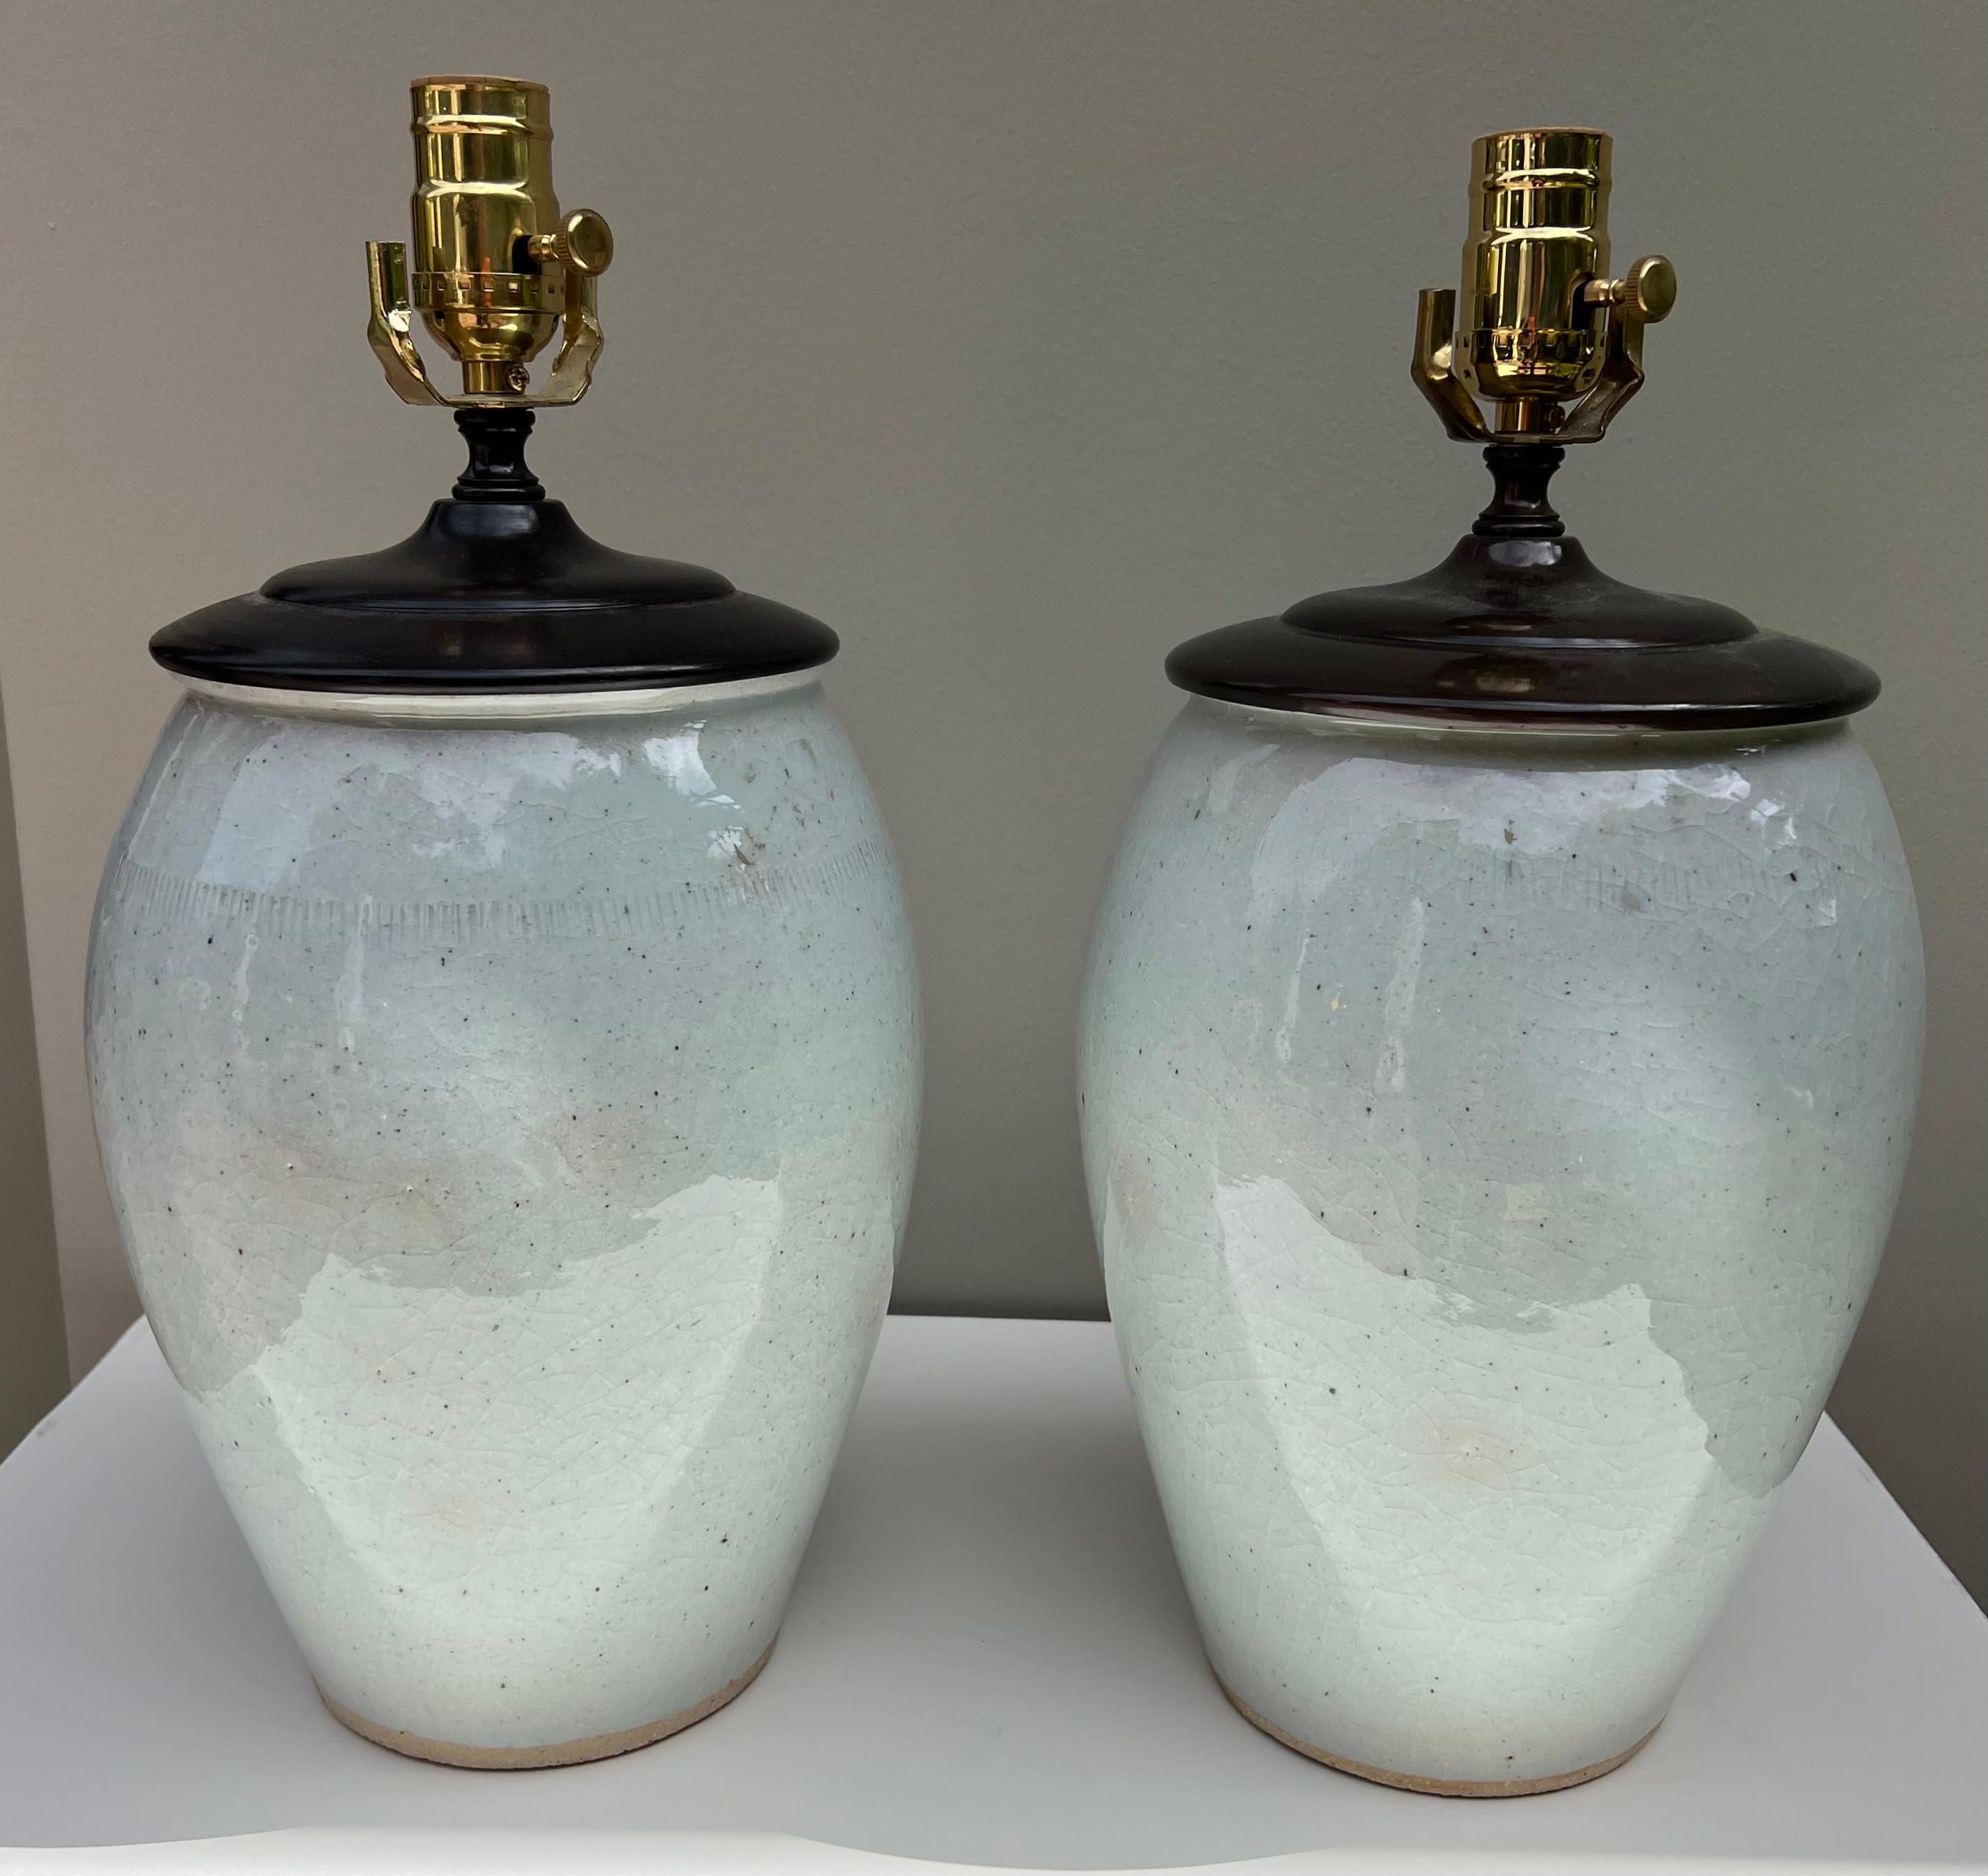 Cette paire de lampes en céramique émaillée est transitoire et s'intègre facilement dans une multitude d'intérieurs.
Les lampes sont nouvellement câblées.